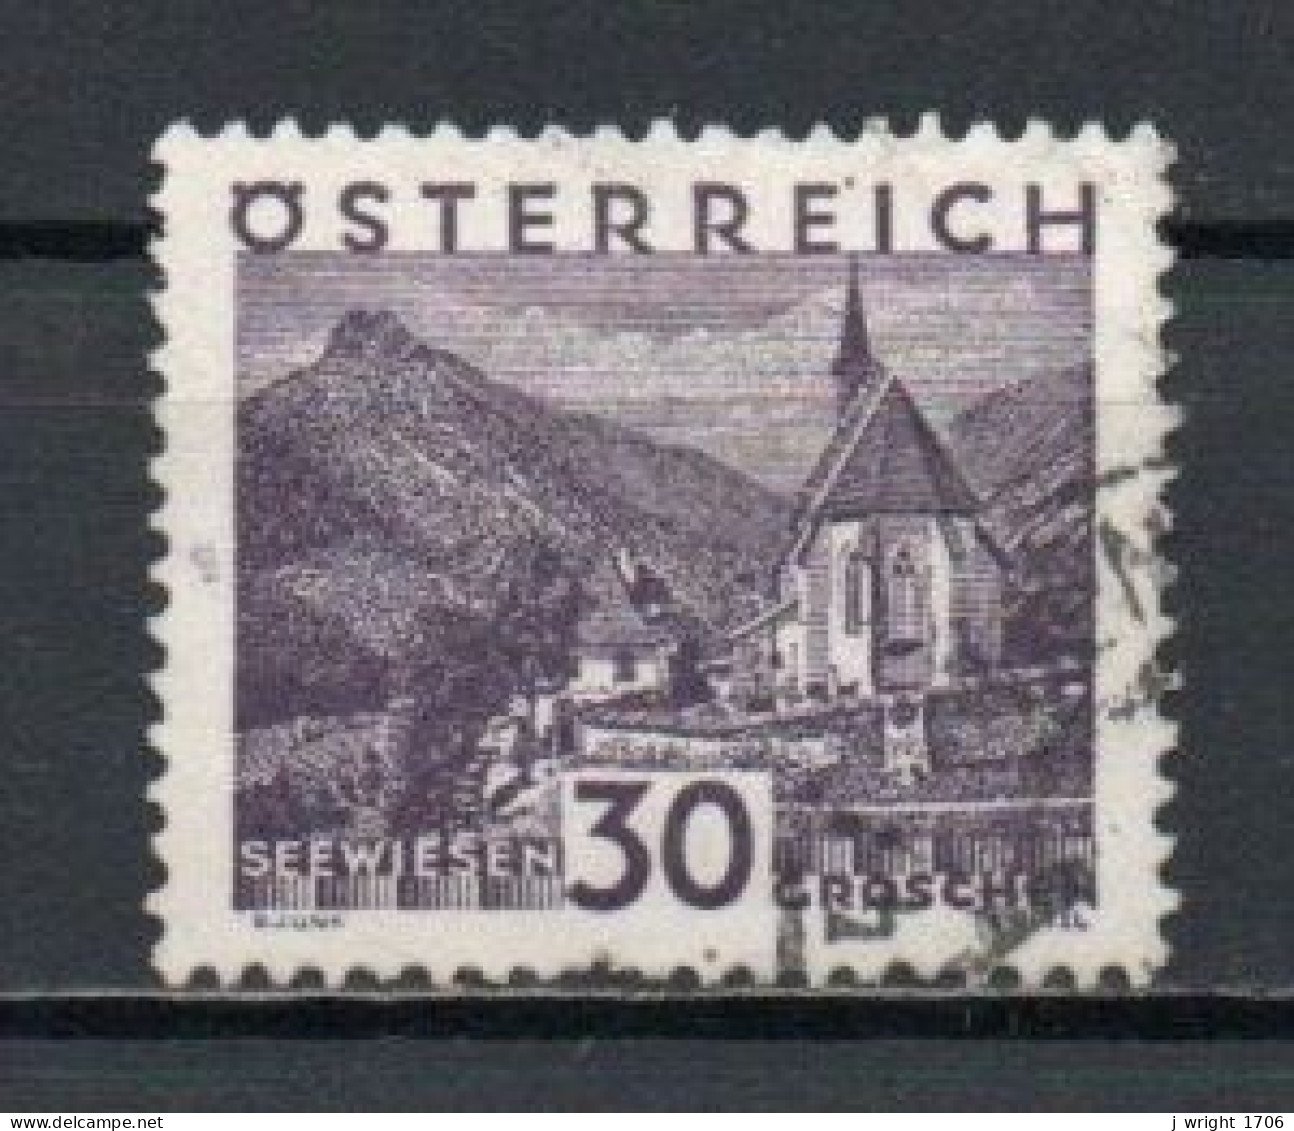 Austria, 1929, Landscapes Large Format/Seewiesen, 30g, USED - Gebraucht